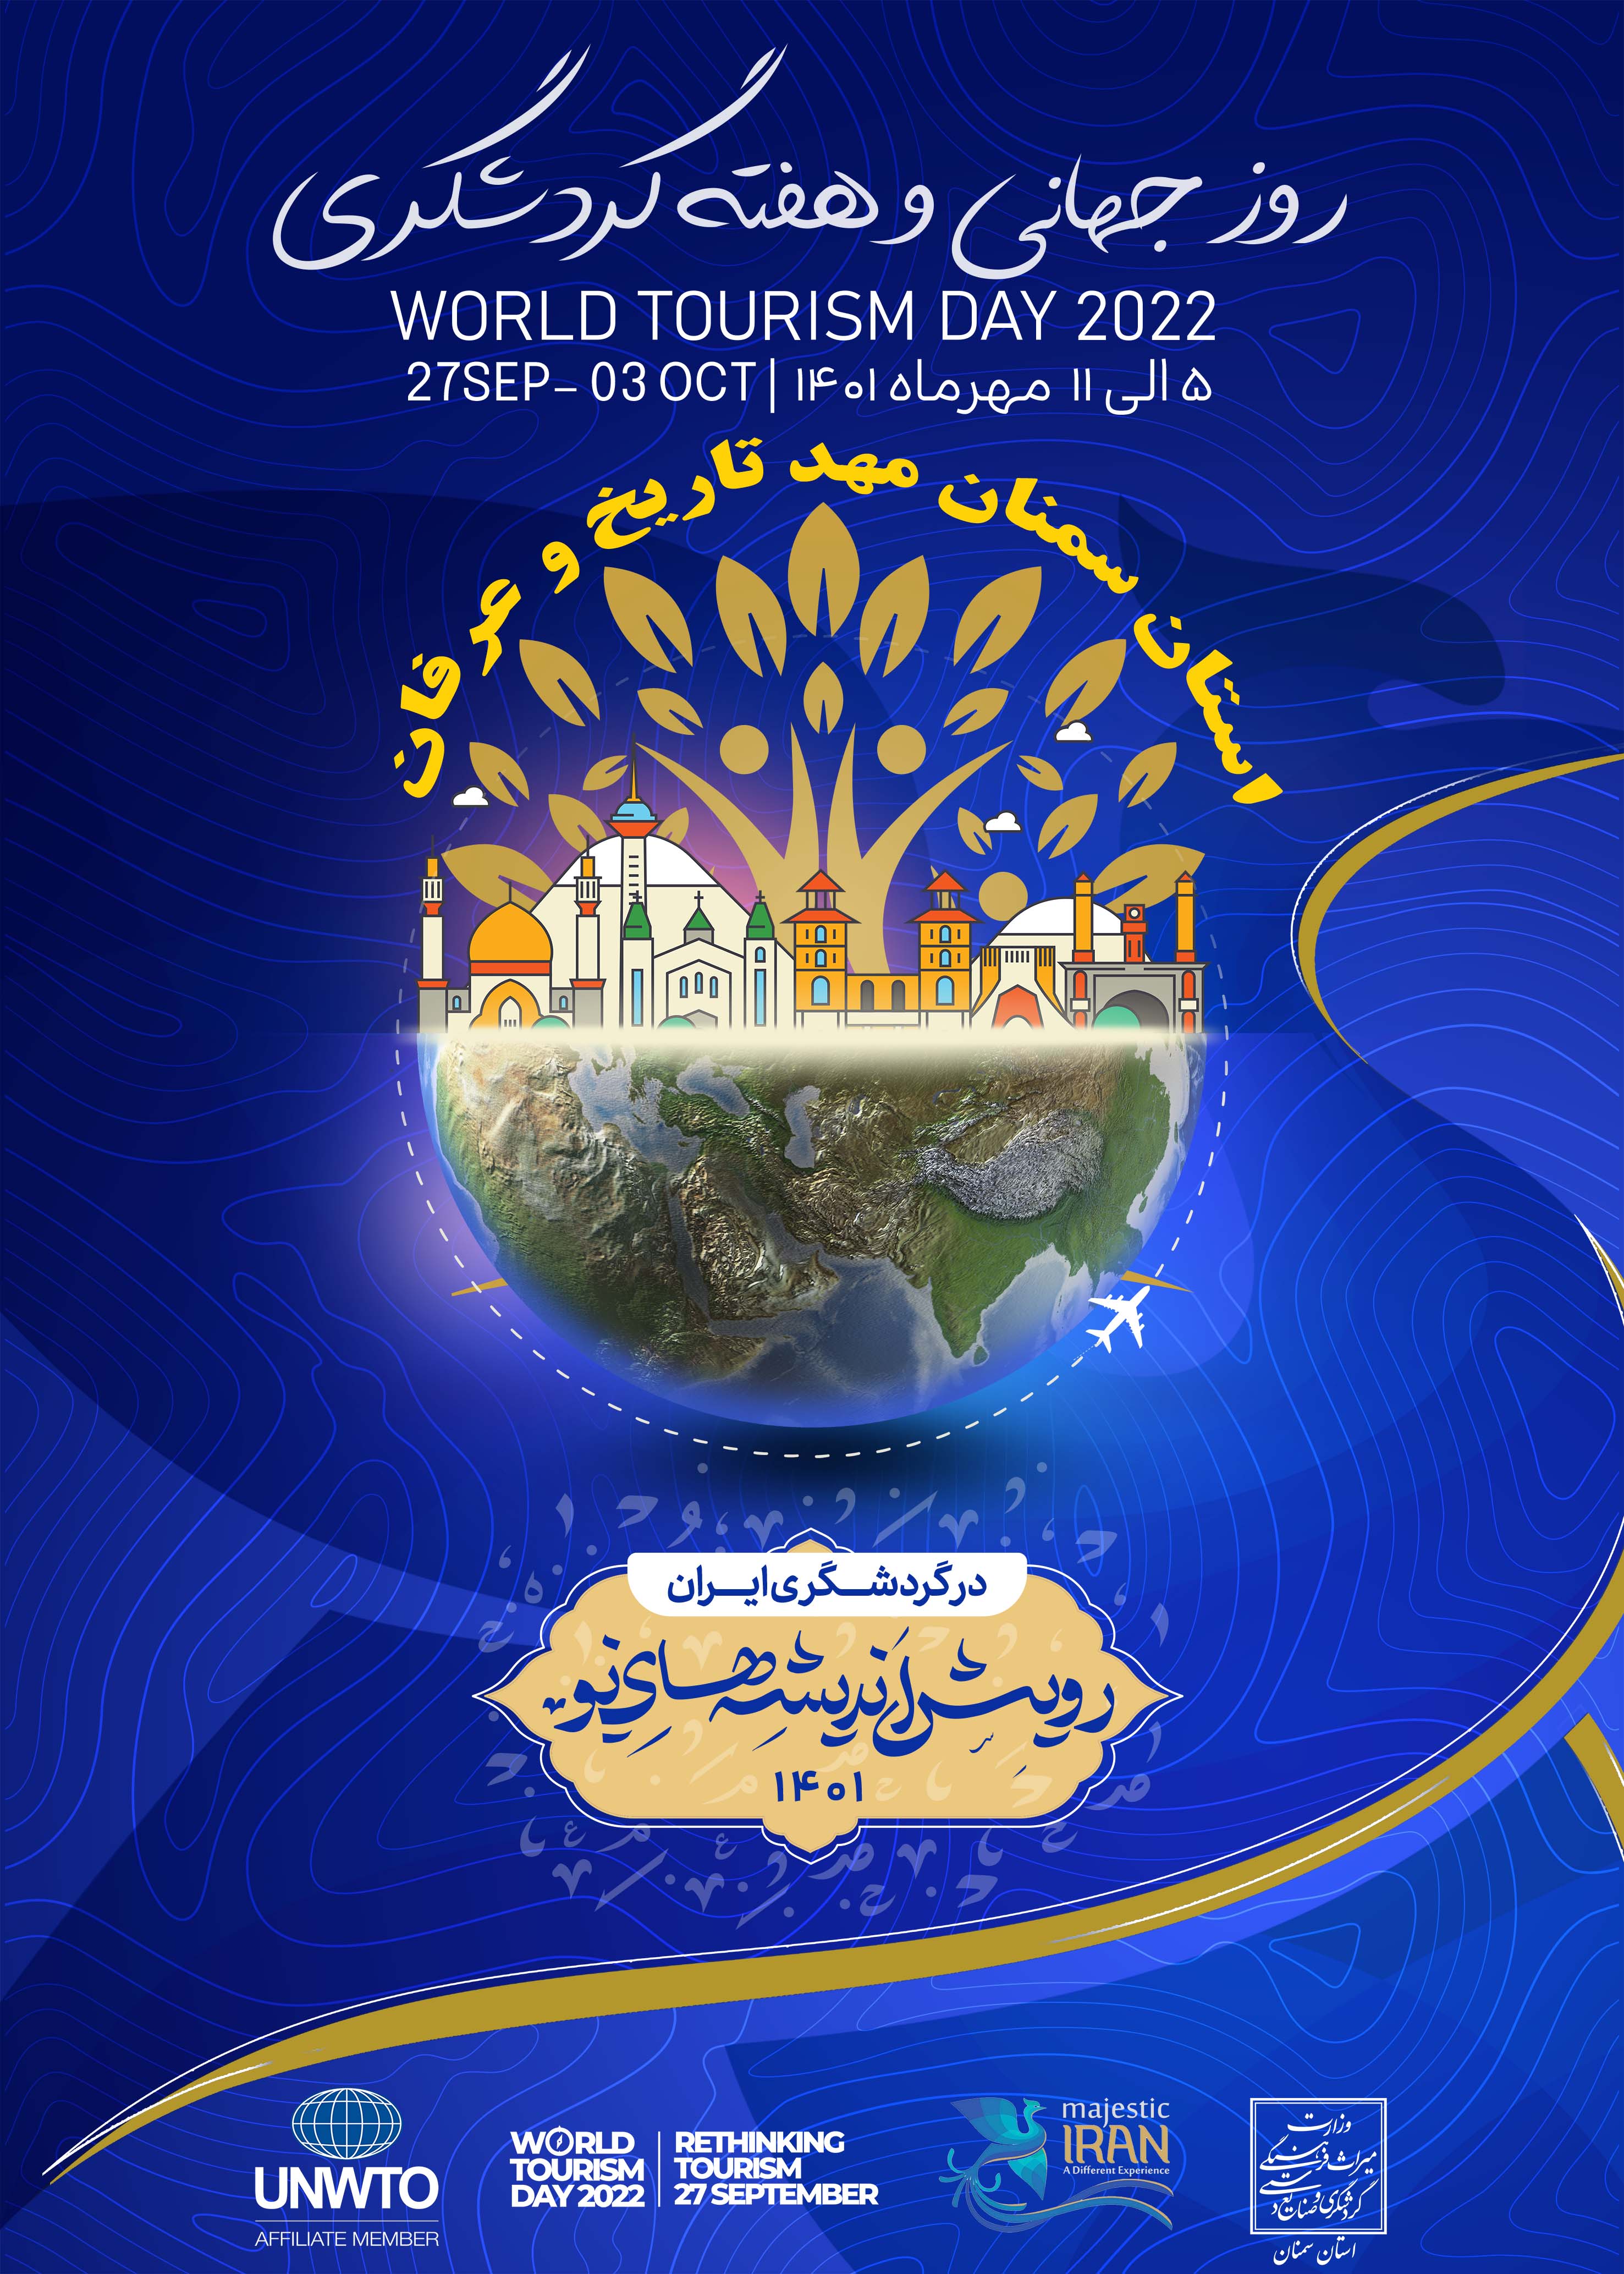 اجرای بیش از 60 عنوان برنامه به مناسبت گرامیداشت هفته گردشگری در استان سمنان